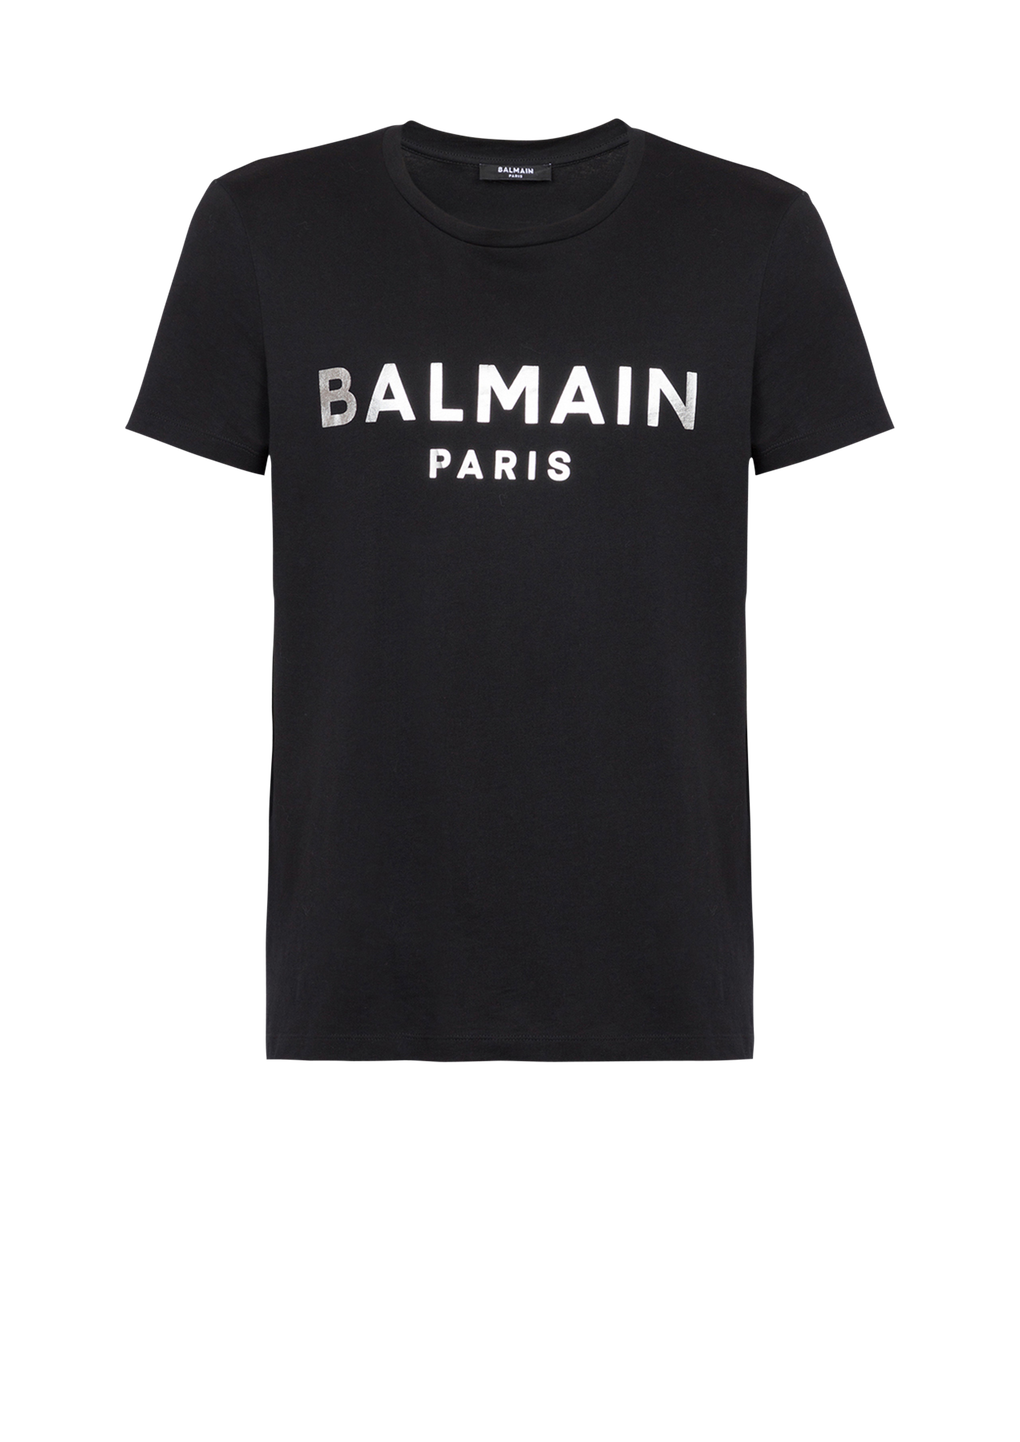 T-shirt in cotone con logo Balmain Paris, argento, hi-res